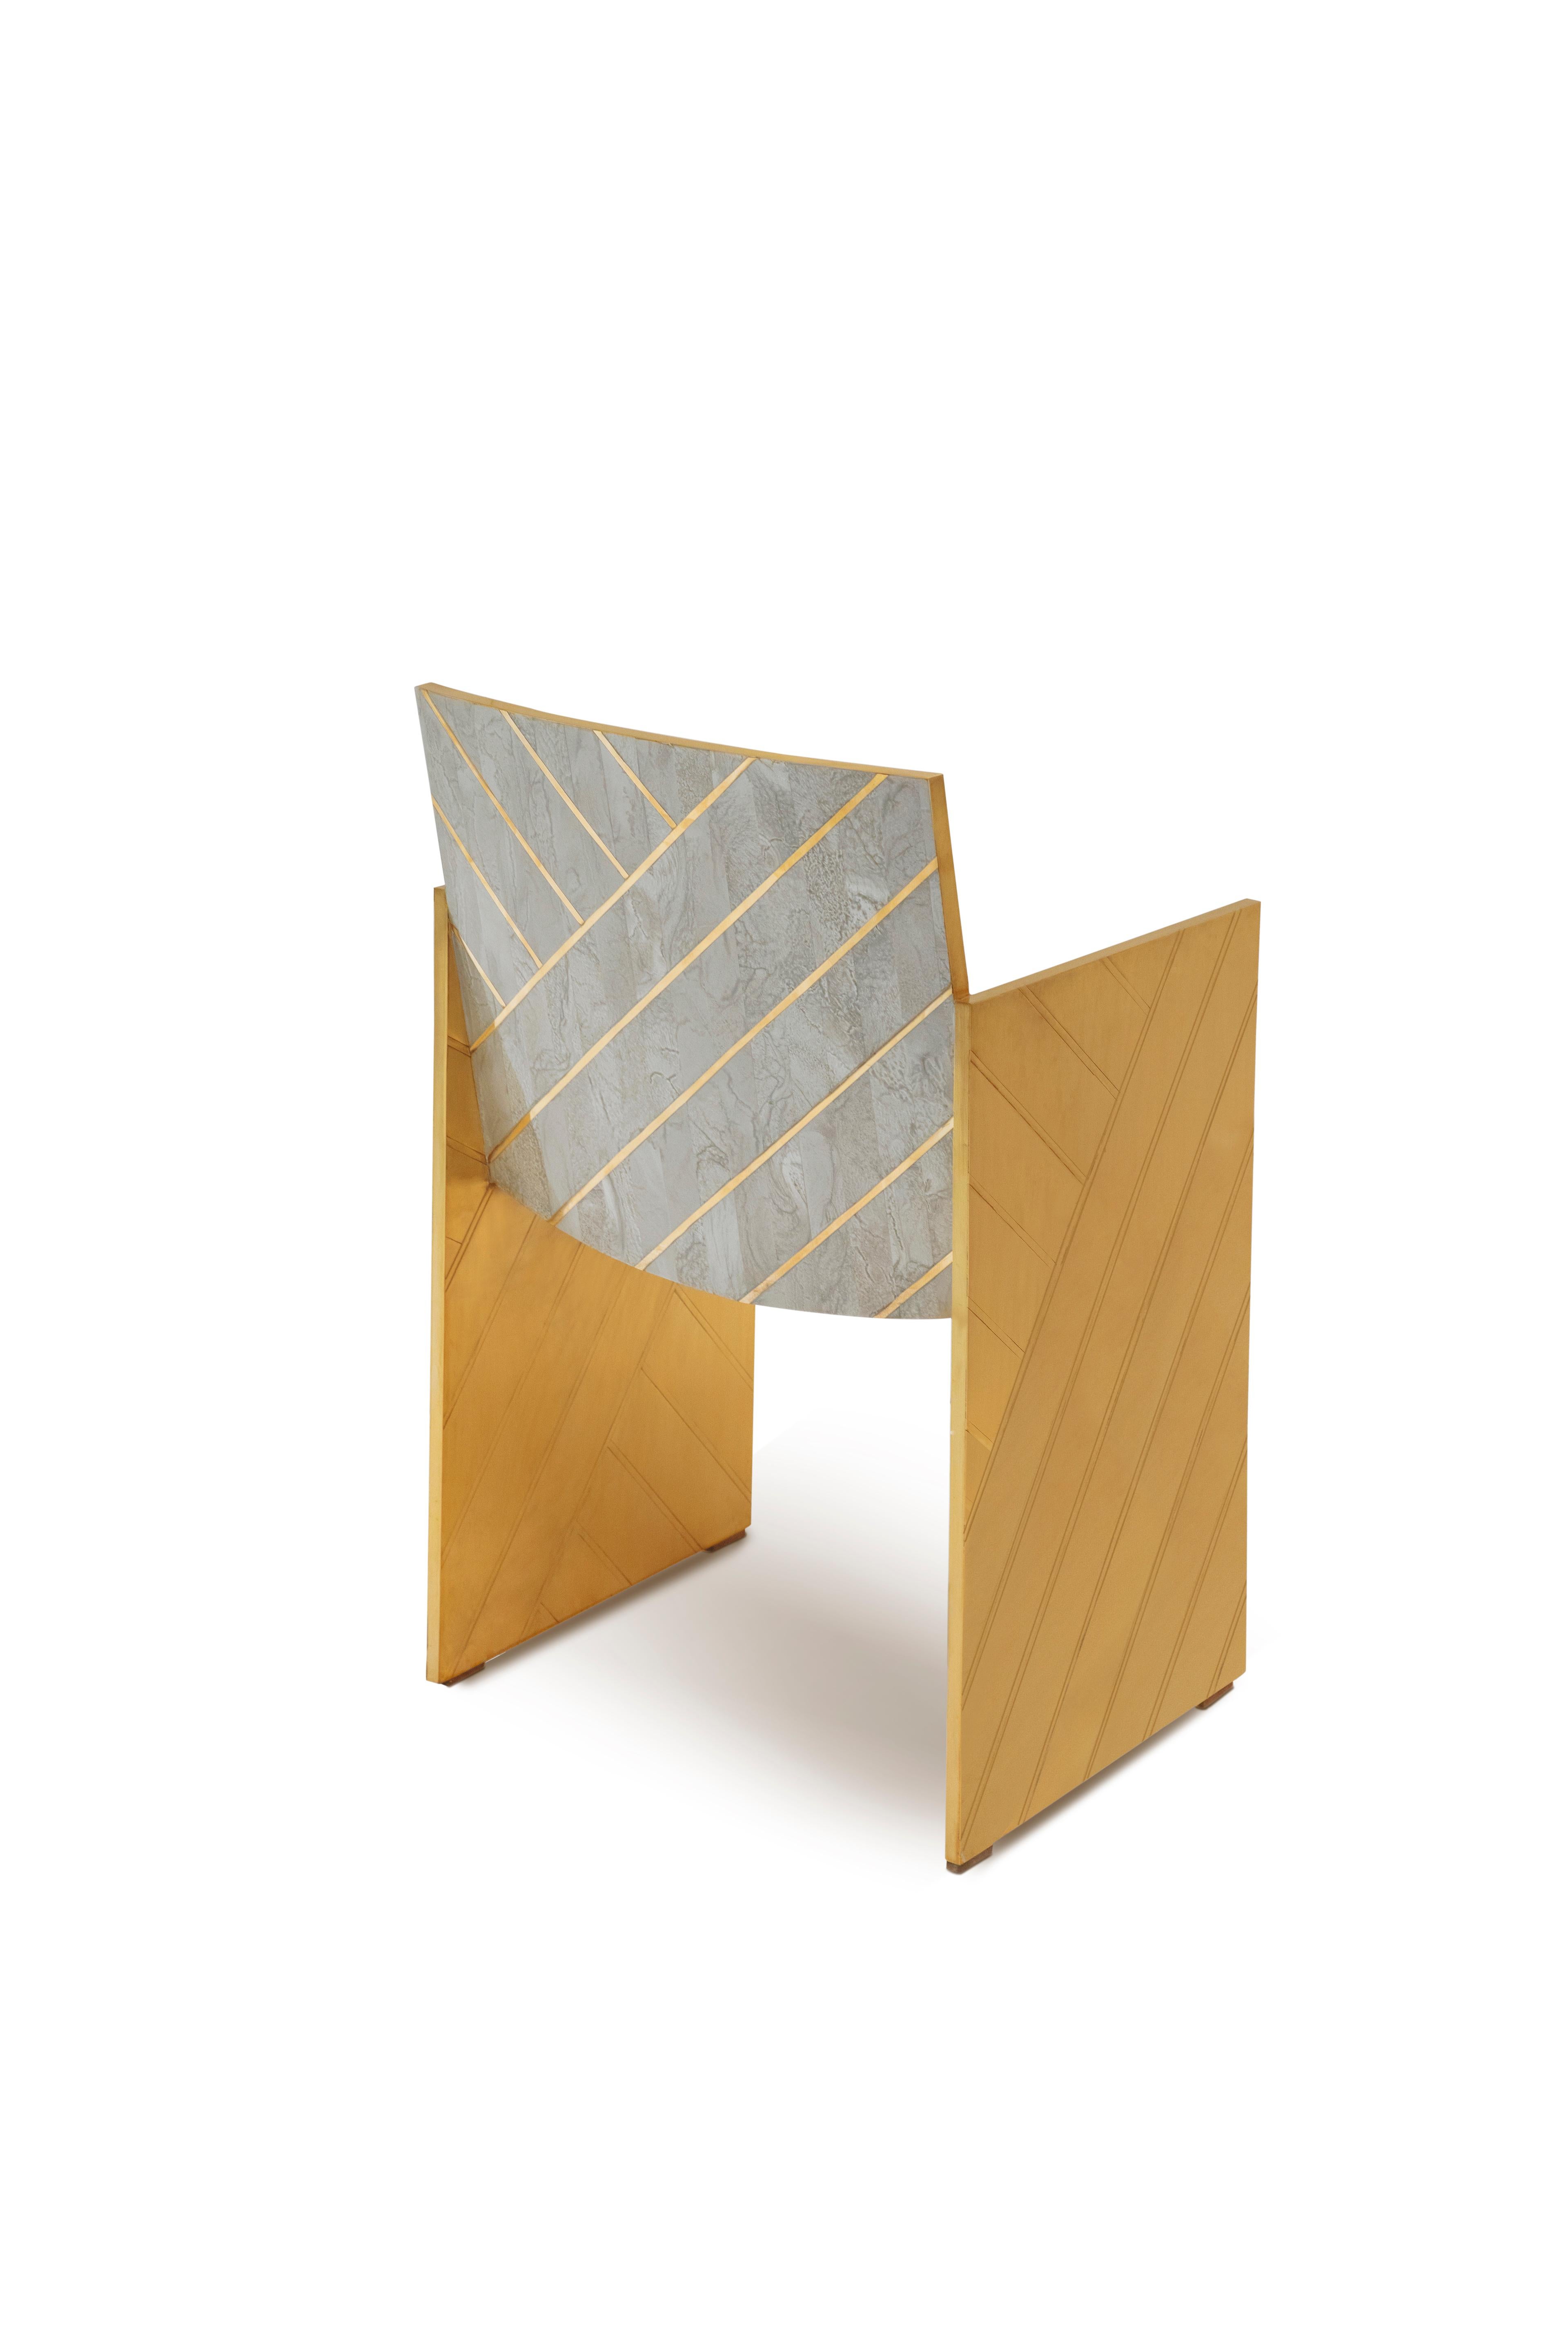 Nesso Gray Dining Chair with Brass Inlay von Matteo Cibic ist ein wunderschöner Stuhl aus perlmuttfarbenem Harz mit geometrischer Messingintarsie. Er lässt sich hervorragend mit dem Esstisch Nesso kombinieren. Er ist in drei Farben erhältlich: